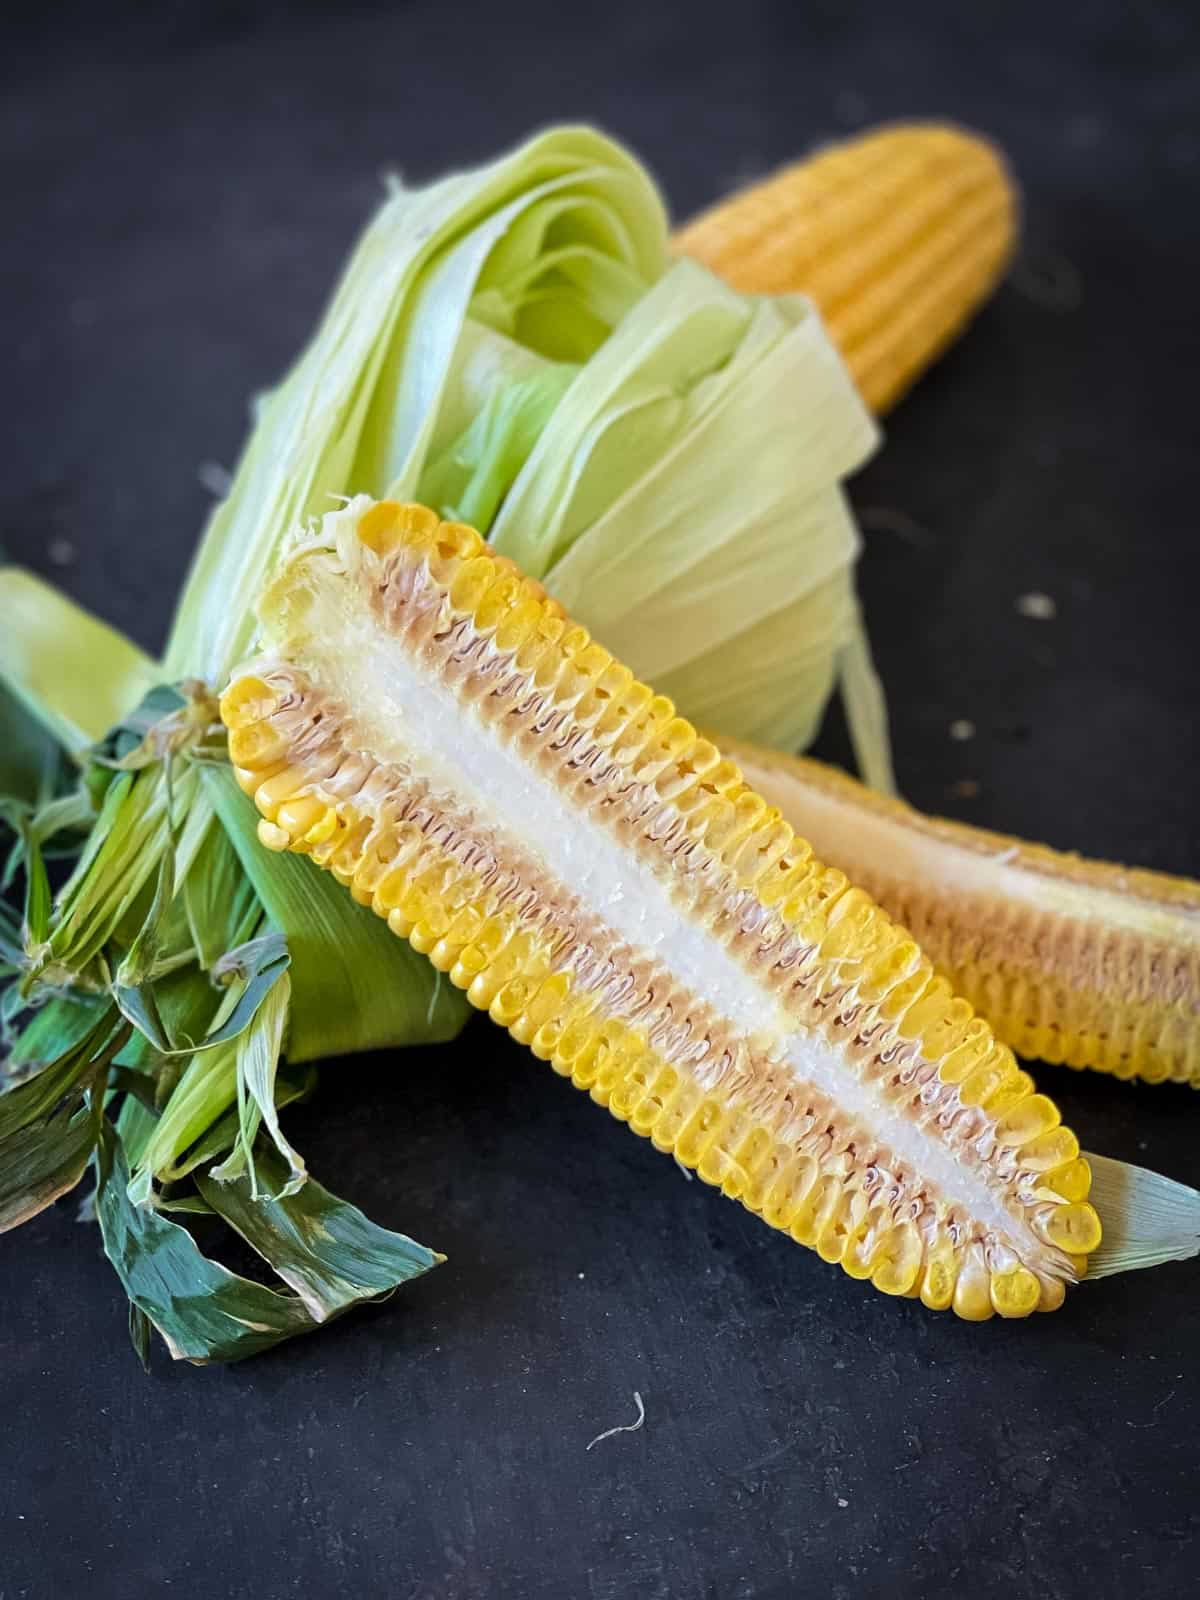 Corn cut in half